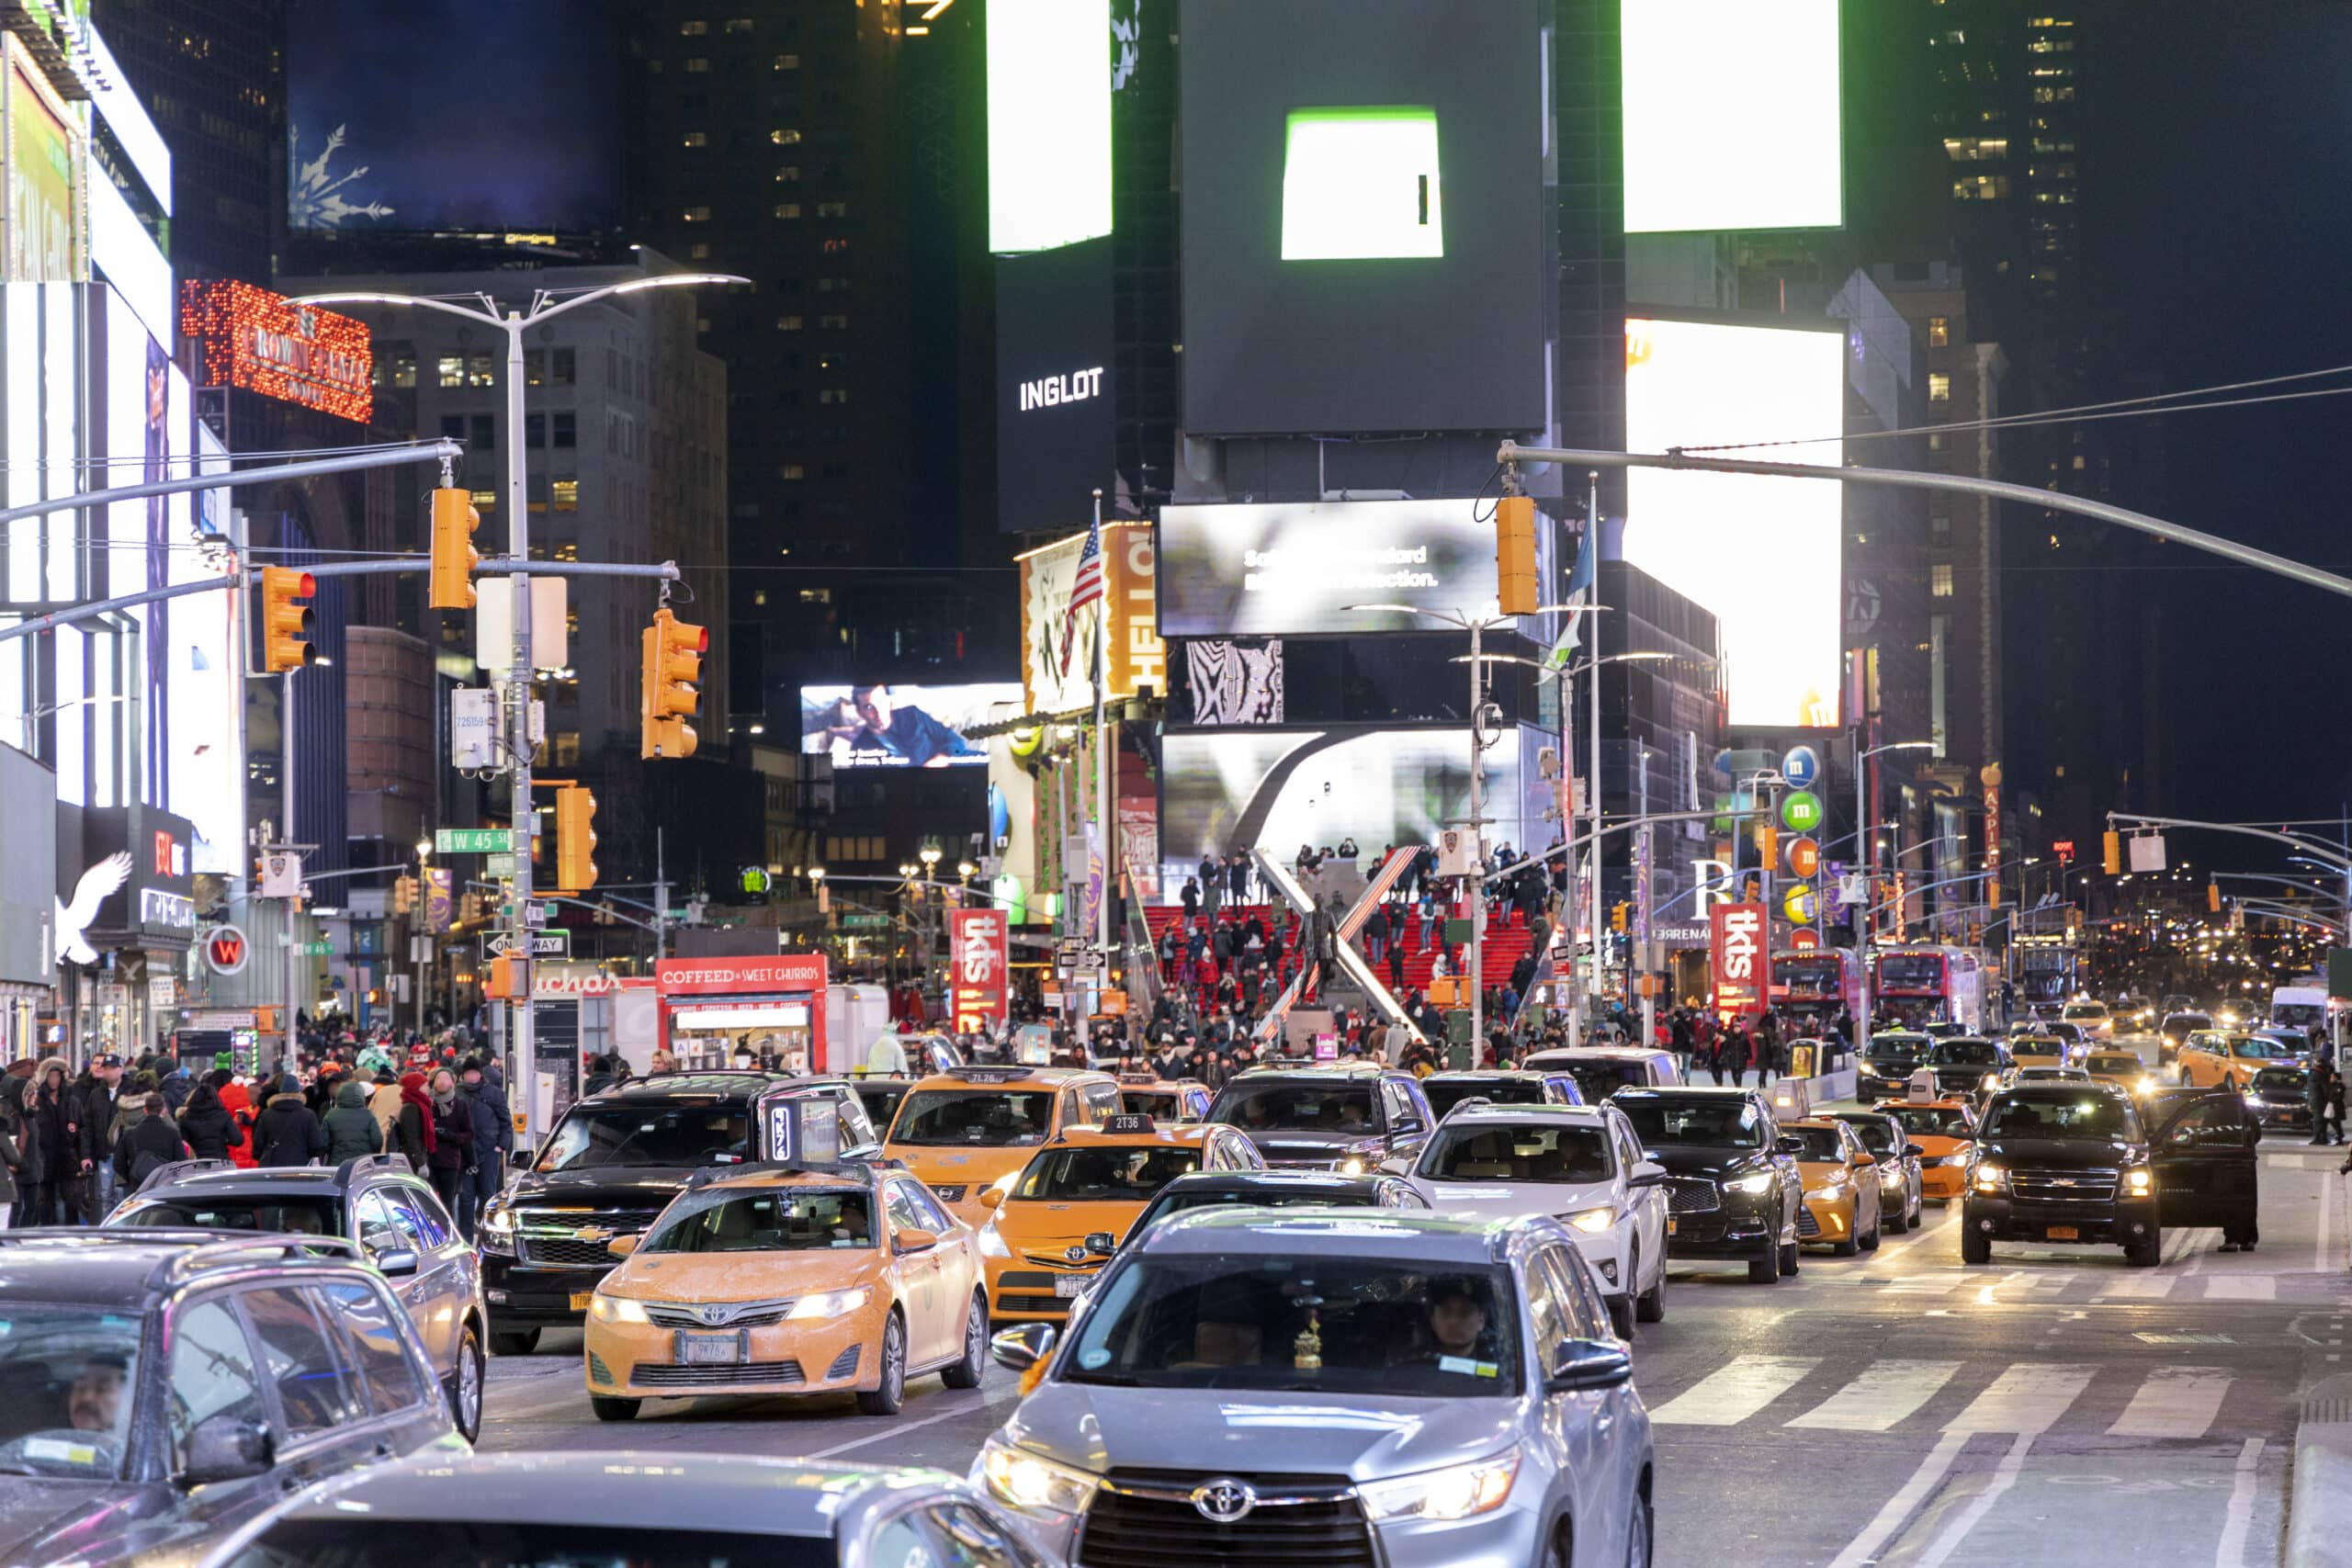 Eine belebte Stadtstraße bei Nacht, beleuchtet von Neonlichtern und Werbetafeln, voller Autos und Fußgänger. Die Szene fängt eine lebendige urbane Atmosphäre ein, wie sie typisch für ein geschäftiges Innenstadtgebiet ist. © Fotografie Tomas Rodriguez